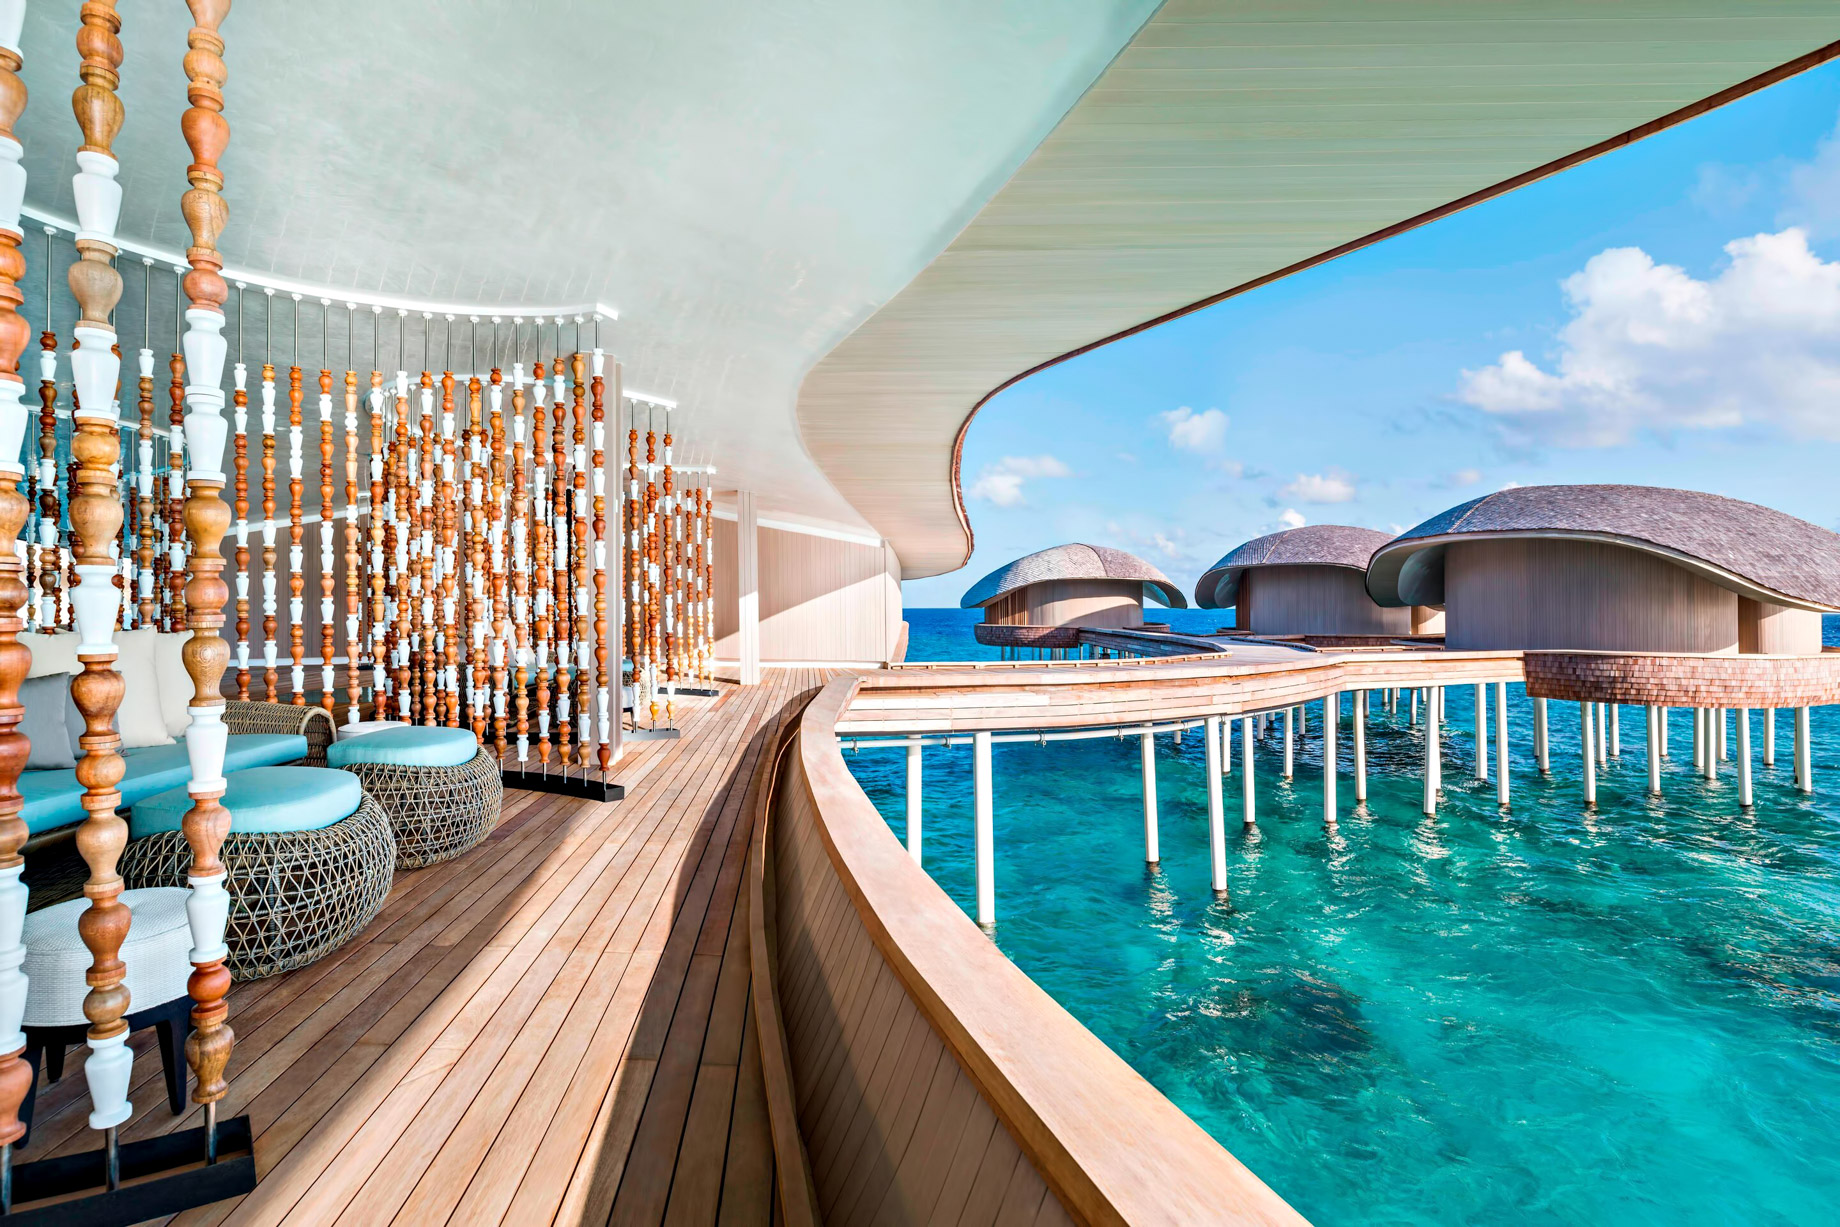 The St. Regis Maldives Vommuli Resort – Dhaalu Atoll, Maldives – Iridium Spa Treatment Rooms